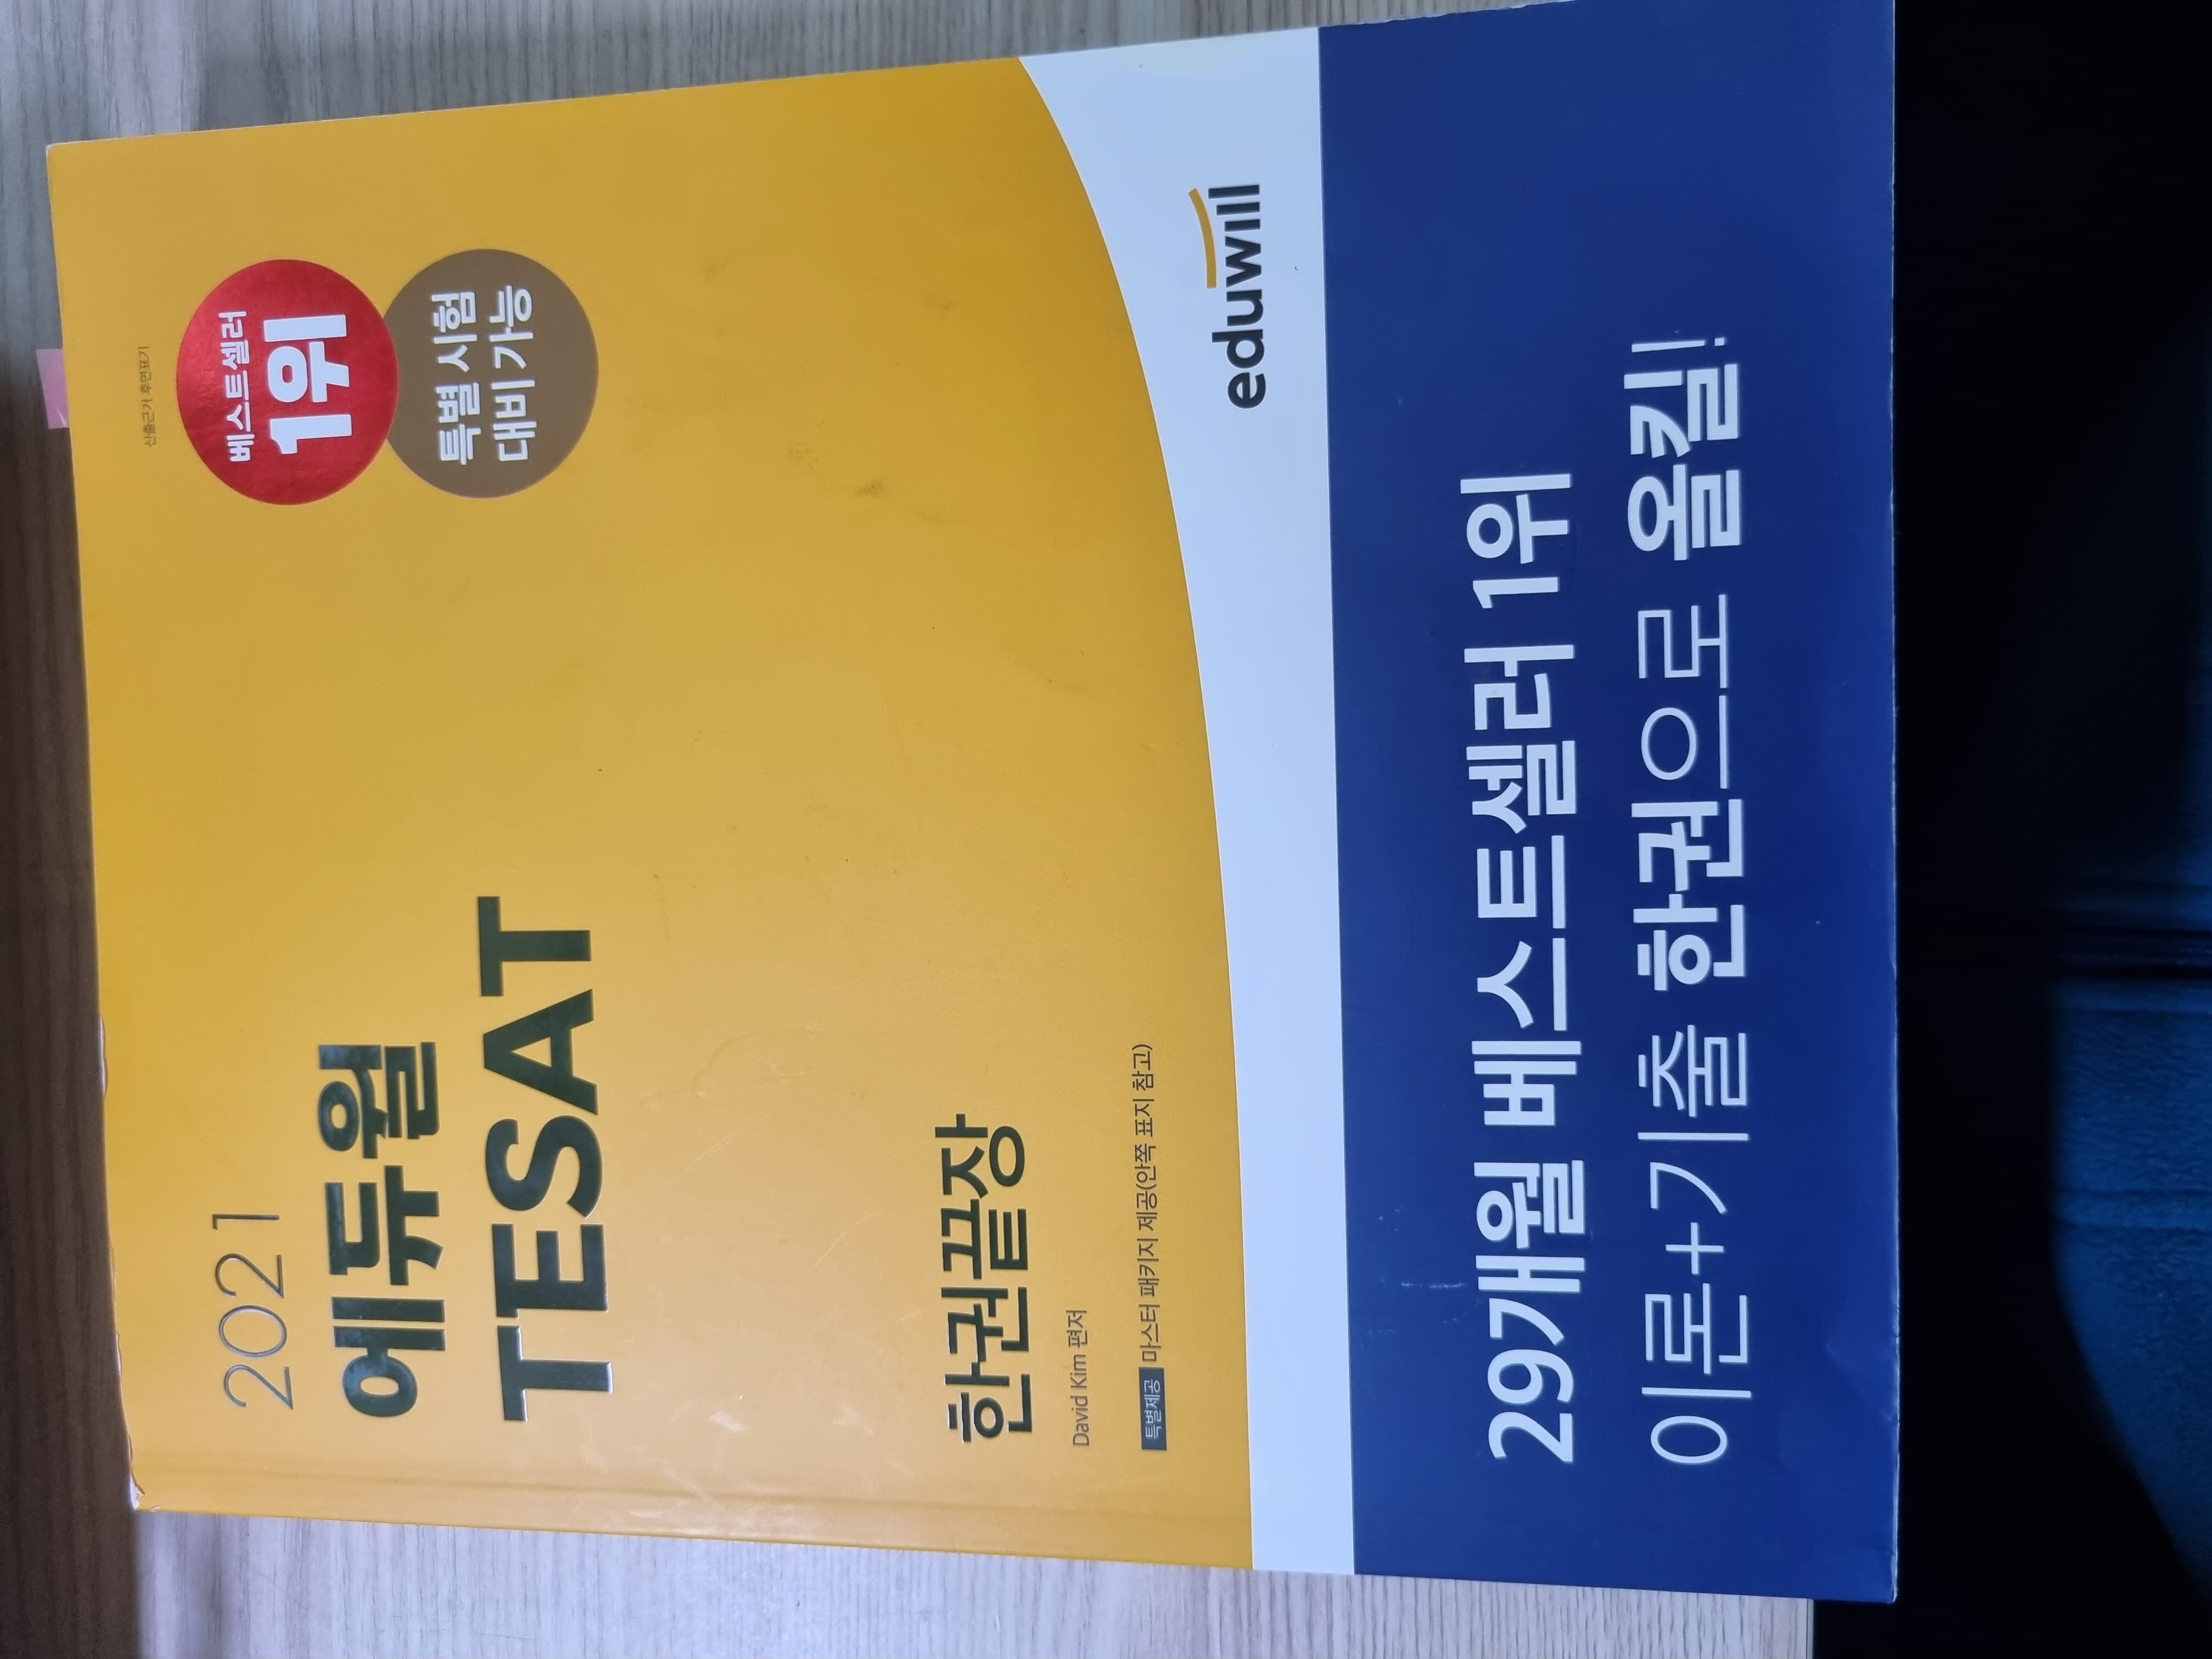 2021 에듀윌 TESAT 한권끝장